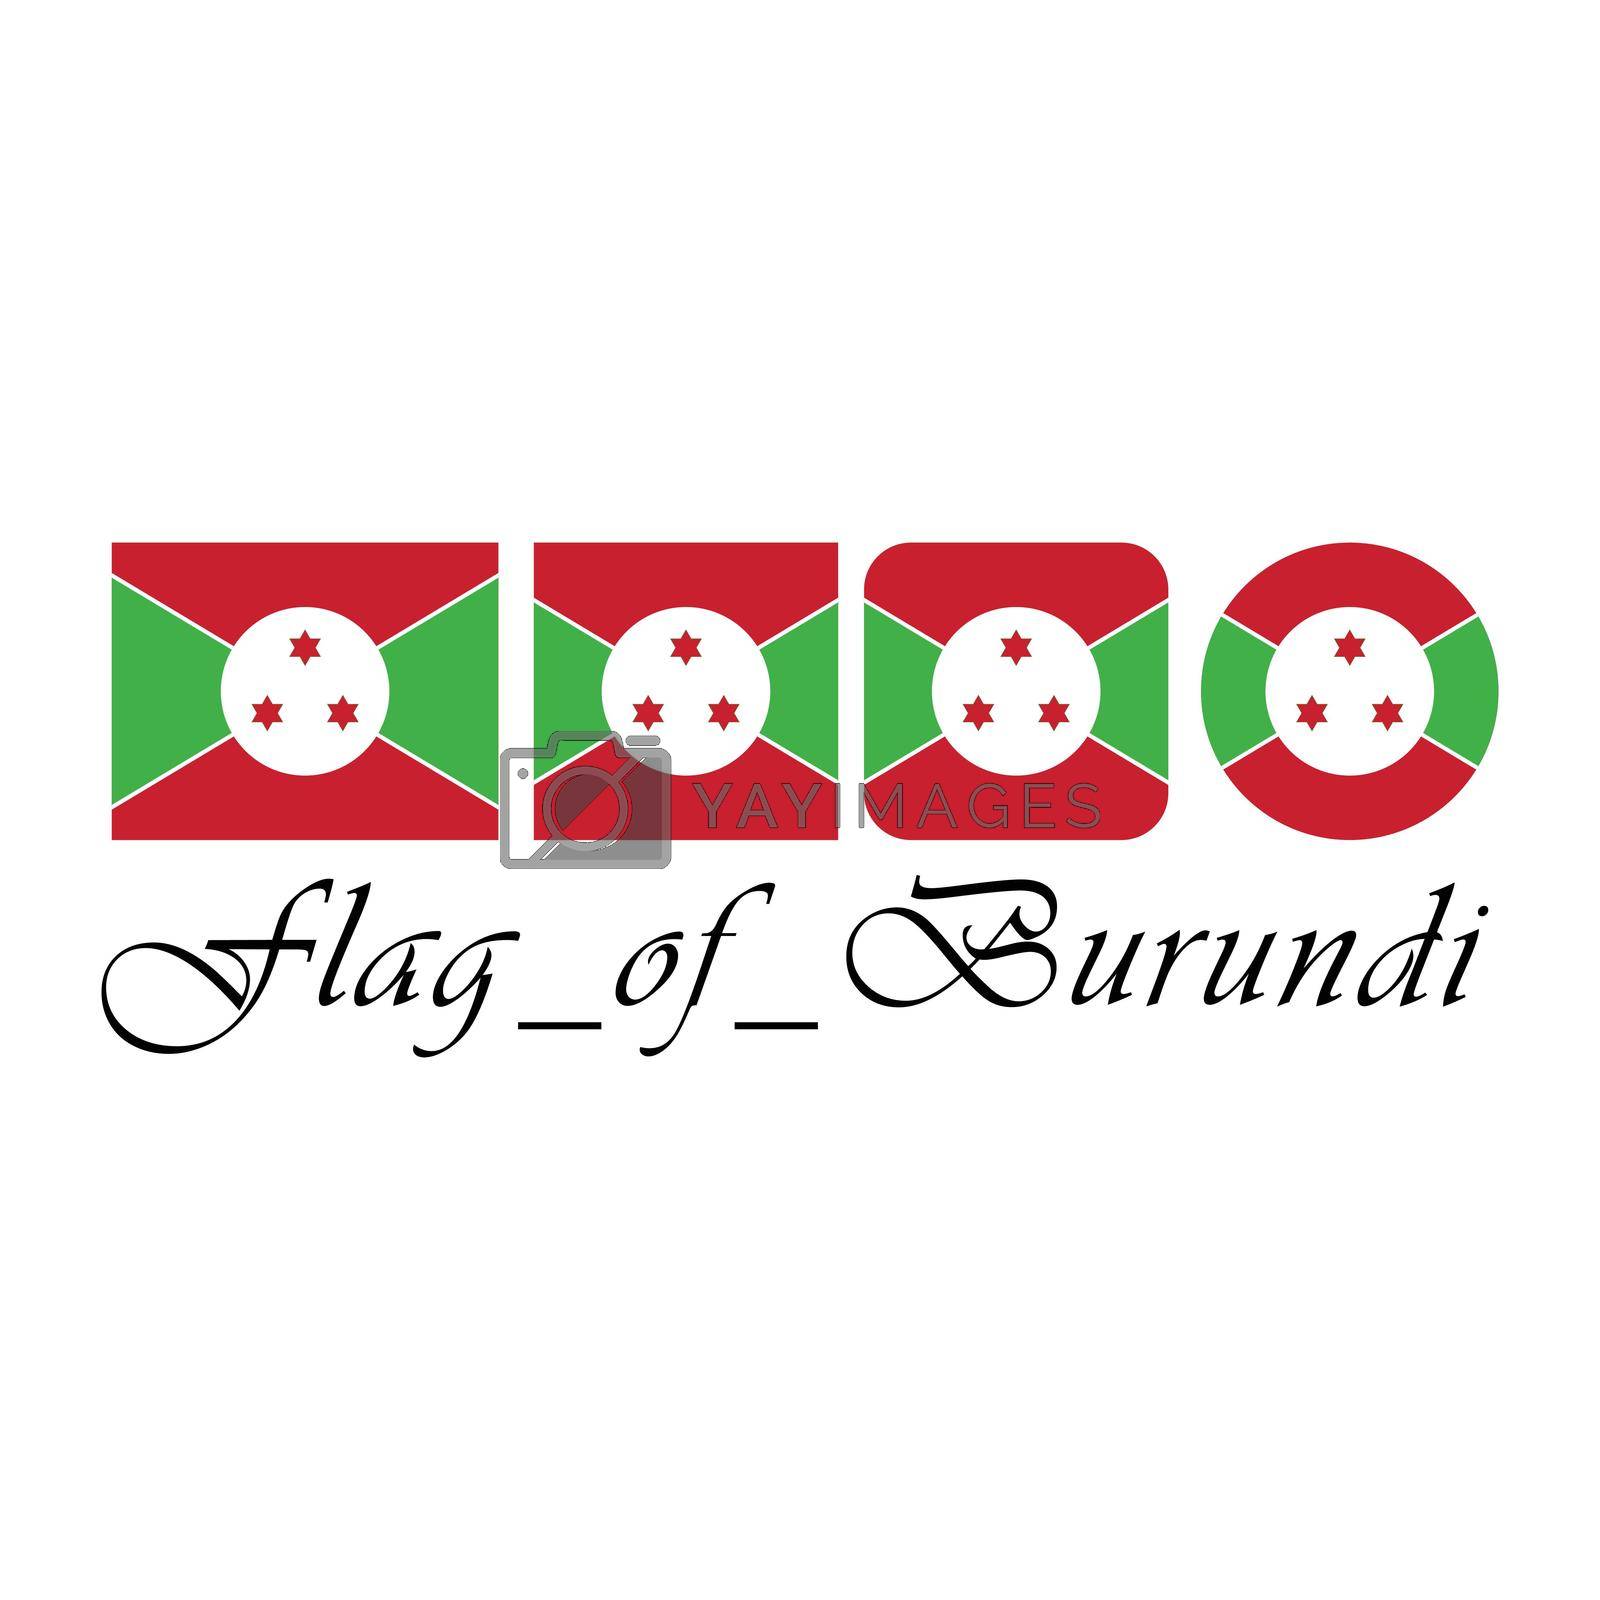 Royalty free image of Flag of Burundi nation design artwork by Menyoen